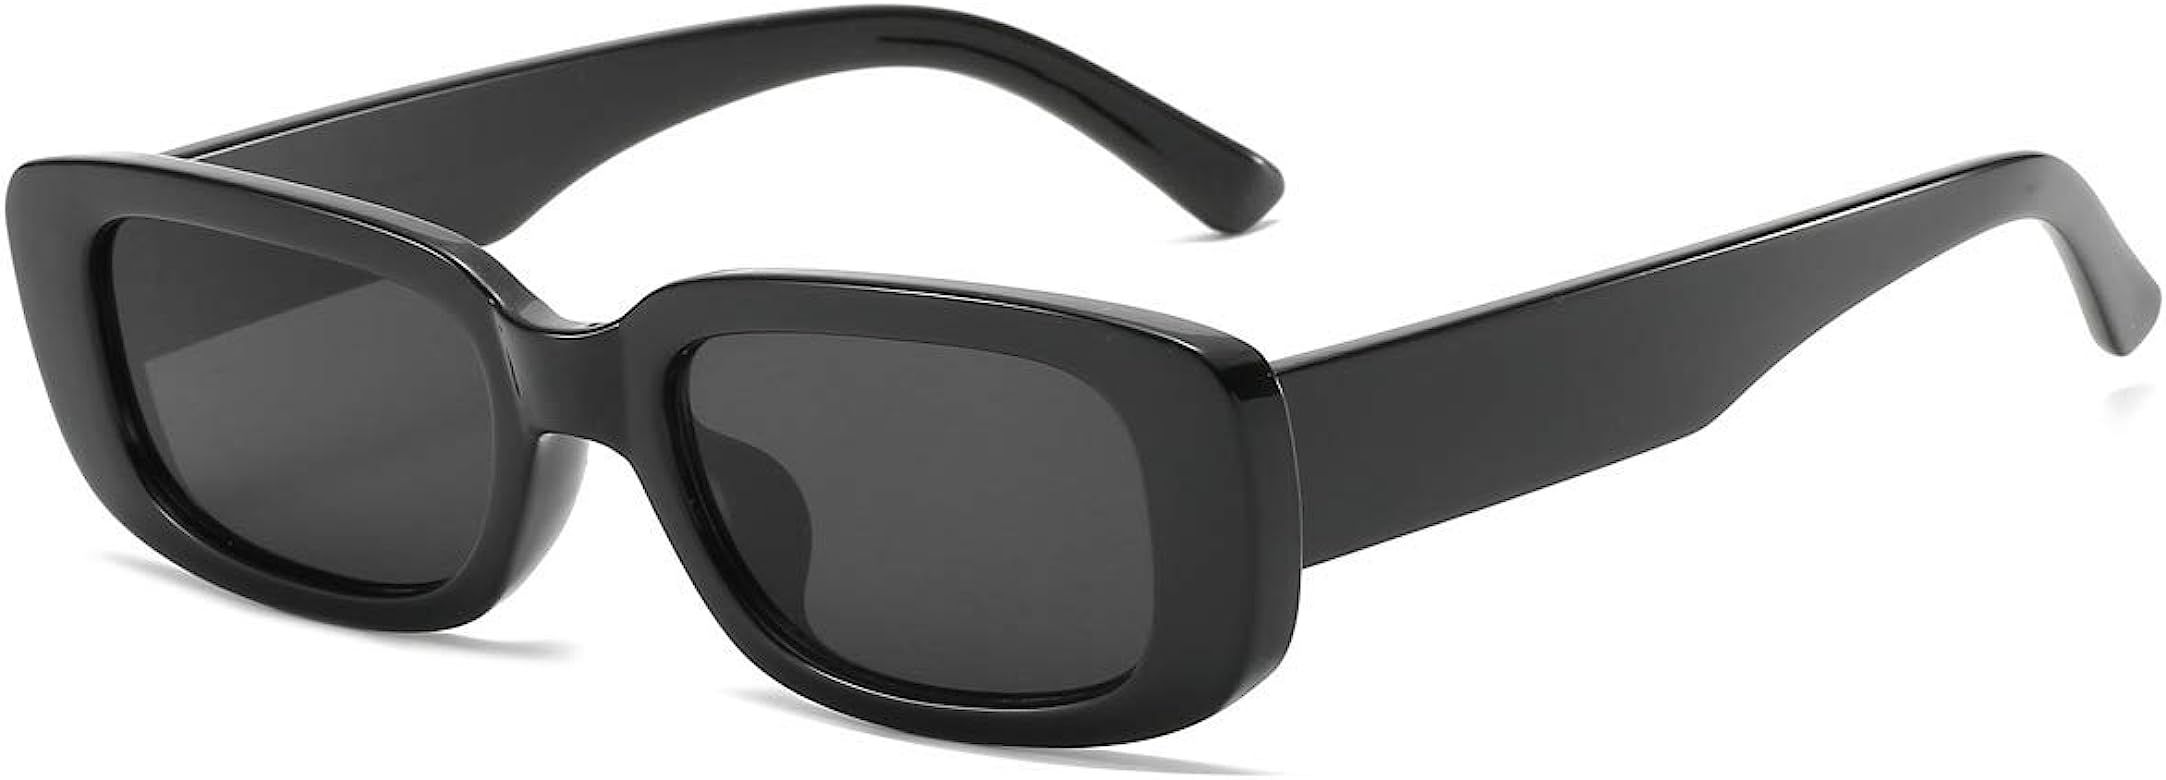 Vintage Rectangle Sunglasses Women Men UV400 Protection Fashion Square Frame Eyewear | Amazon (UK)